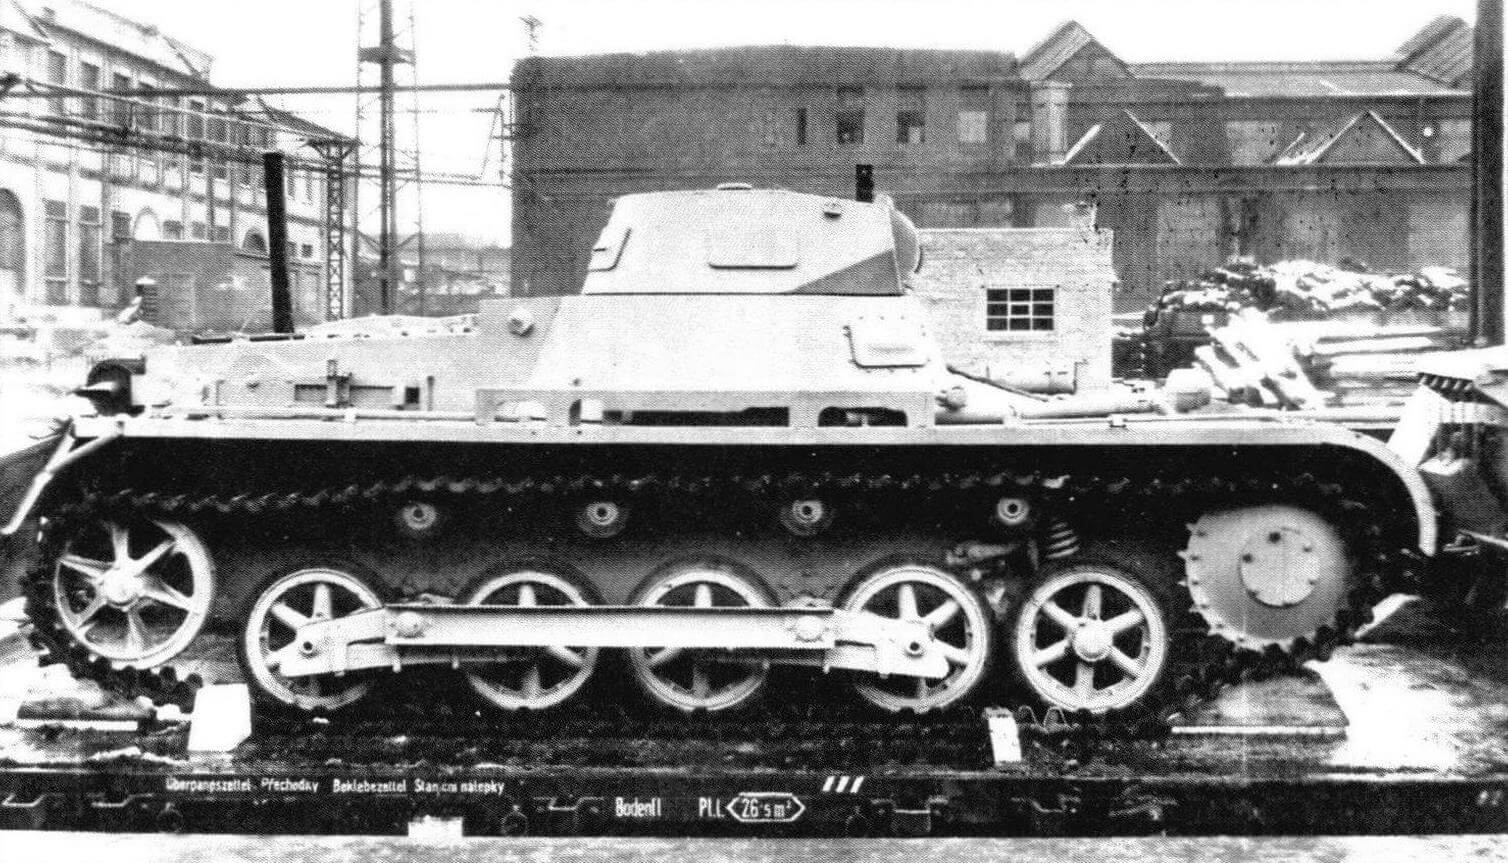 Рz.I Ausf.B. Прекрасно видна измененная ходовая часть. Небольшая арочная конструкция в середине надгусеничной полки, предназначенная для укладки радиоантенны,-единственная деталь танка, выполненная из дерева